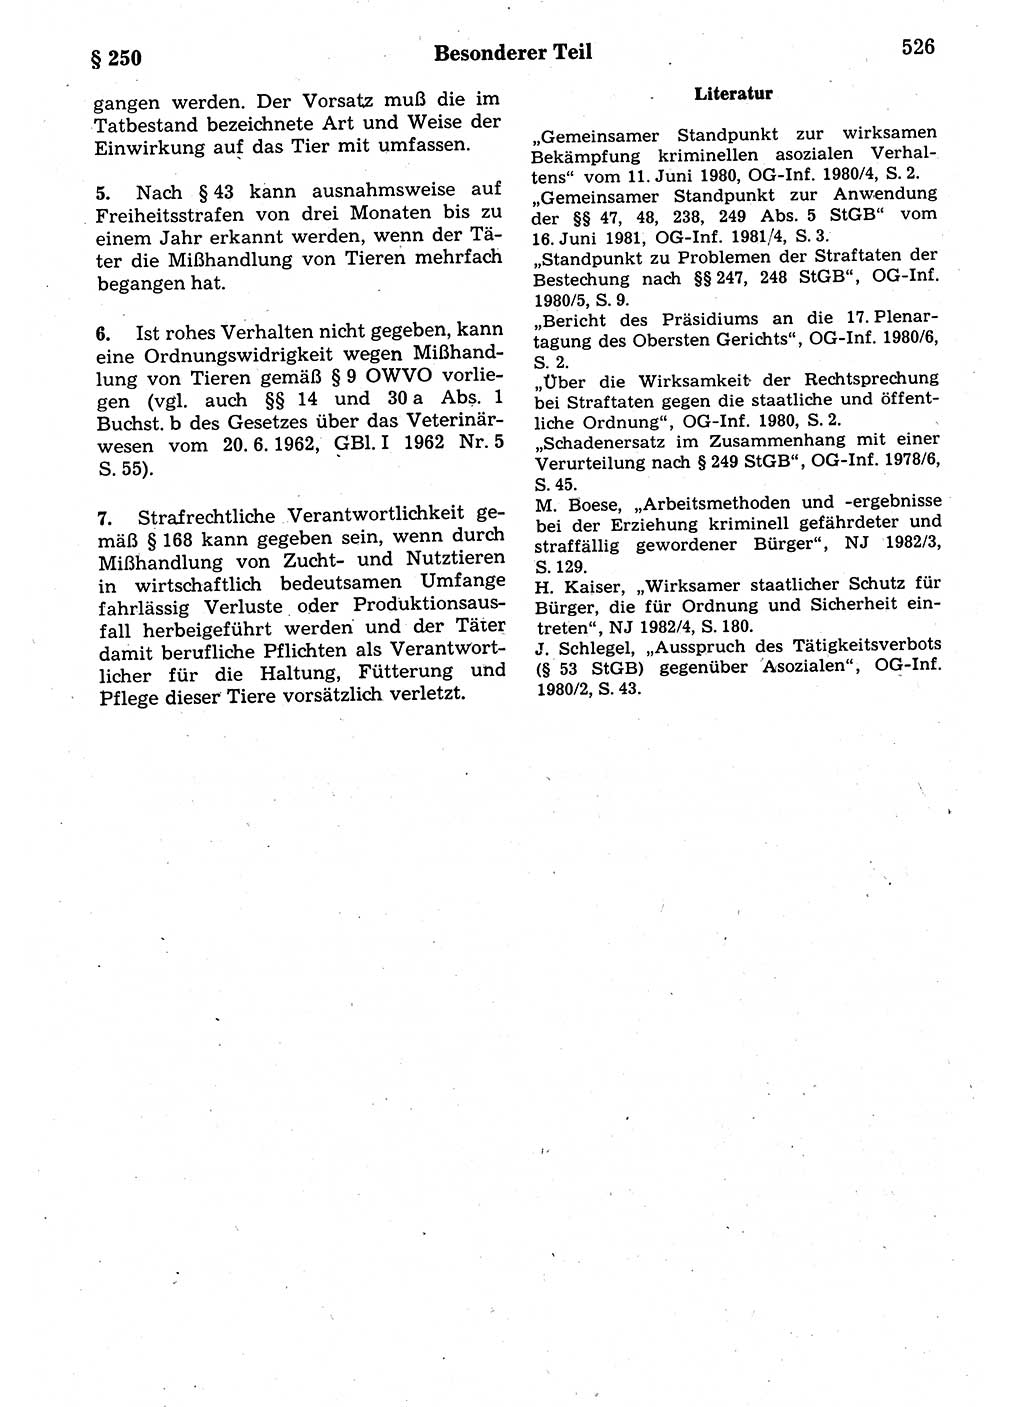 Strafrecht der Deutschen Demokratischen Republik (DDR), Kommentar zum Strafgesetzbuch (StGB) 1987, Seite 526 (Strafr. DDR Komm. StGB 1987, S. 526)